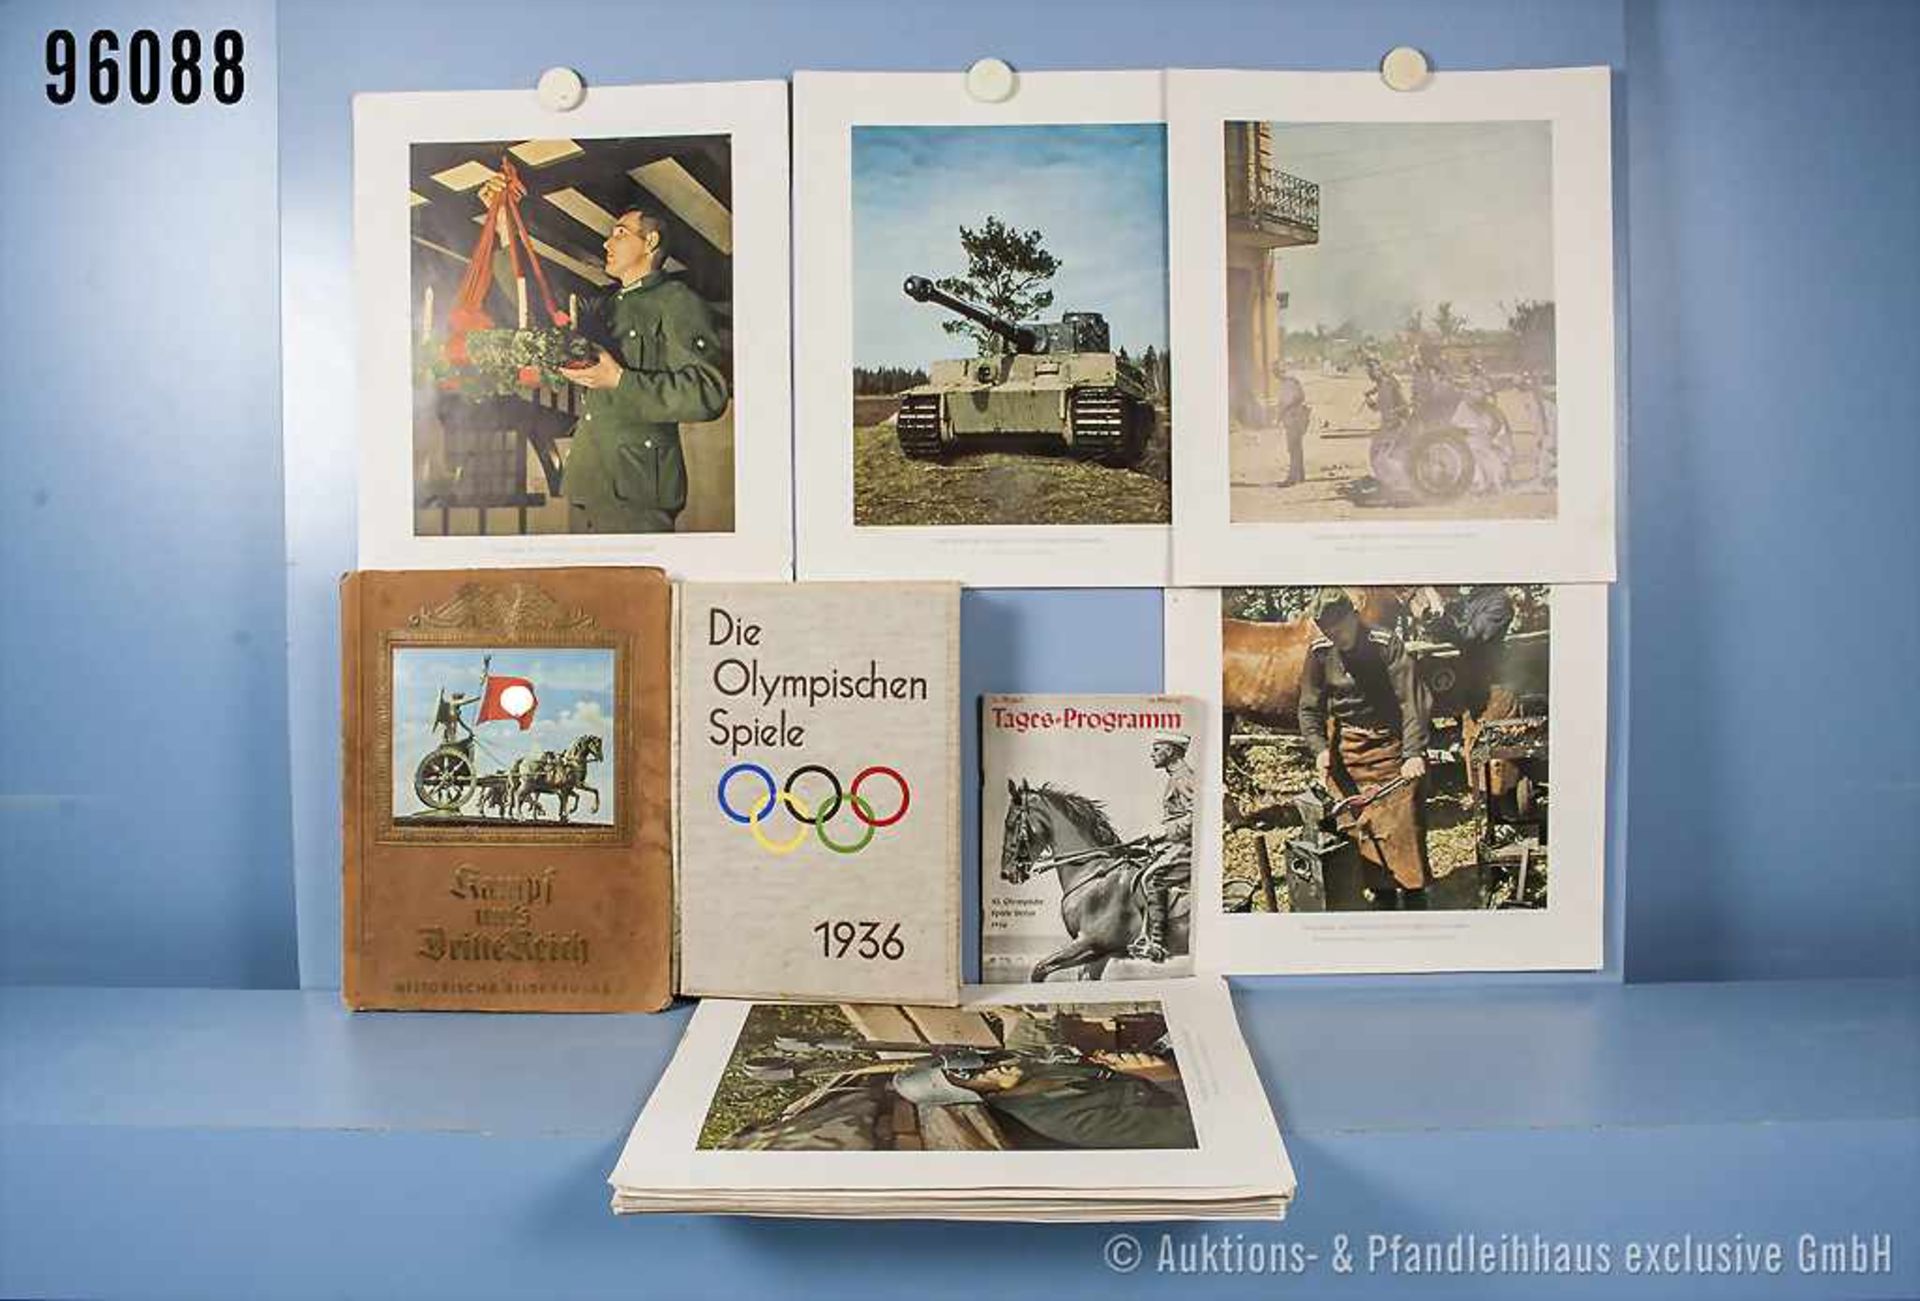 Konv. Raumbildalbum "Die Olympischen Spiele 1936", komplett mit Brille und 100 Stereobildern,